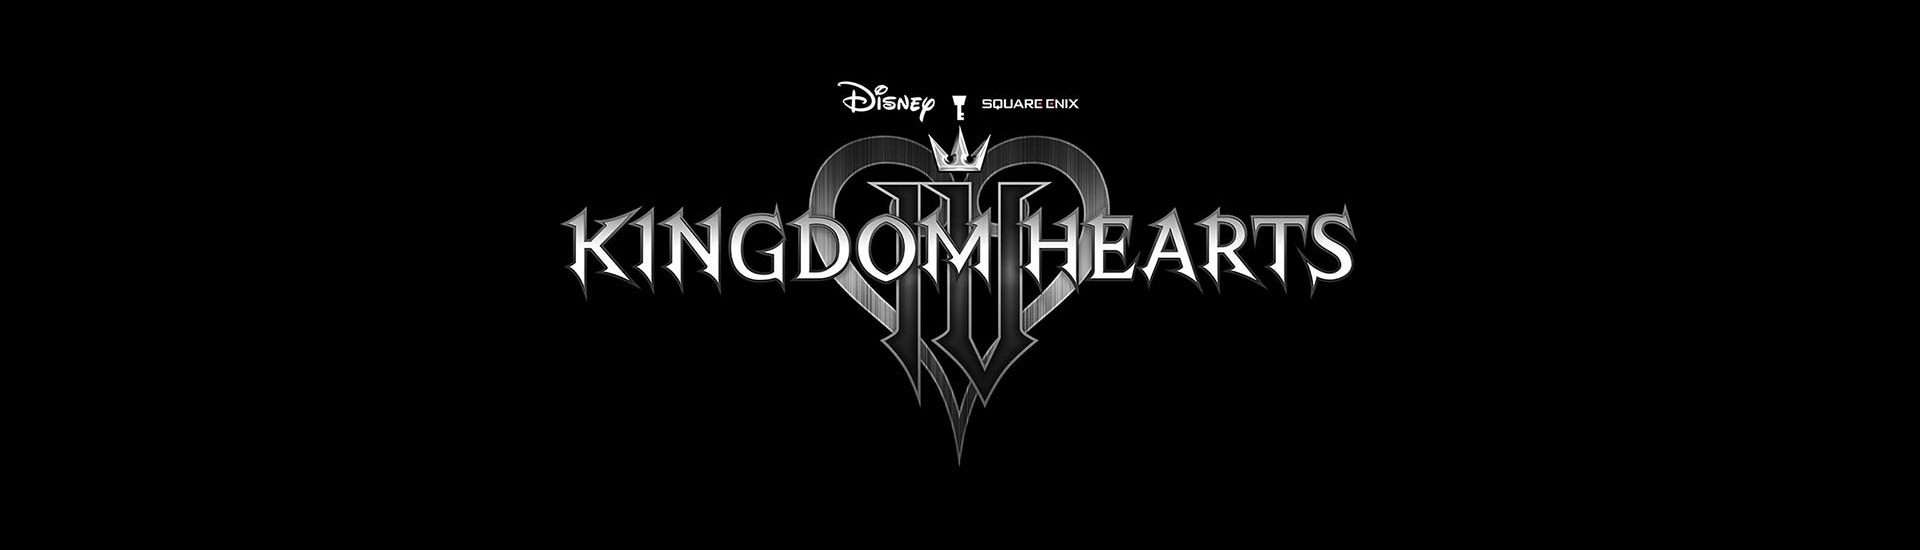 Kingdom Hearts 4 wird mit Gameplay-Trailer angekündigt